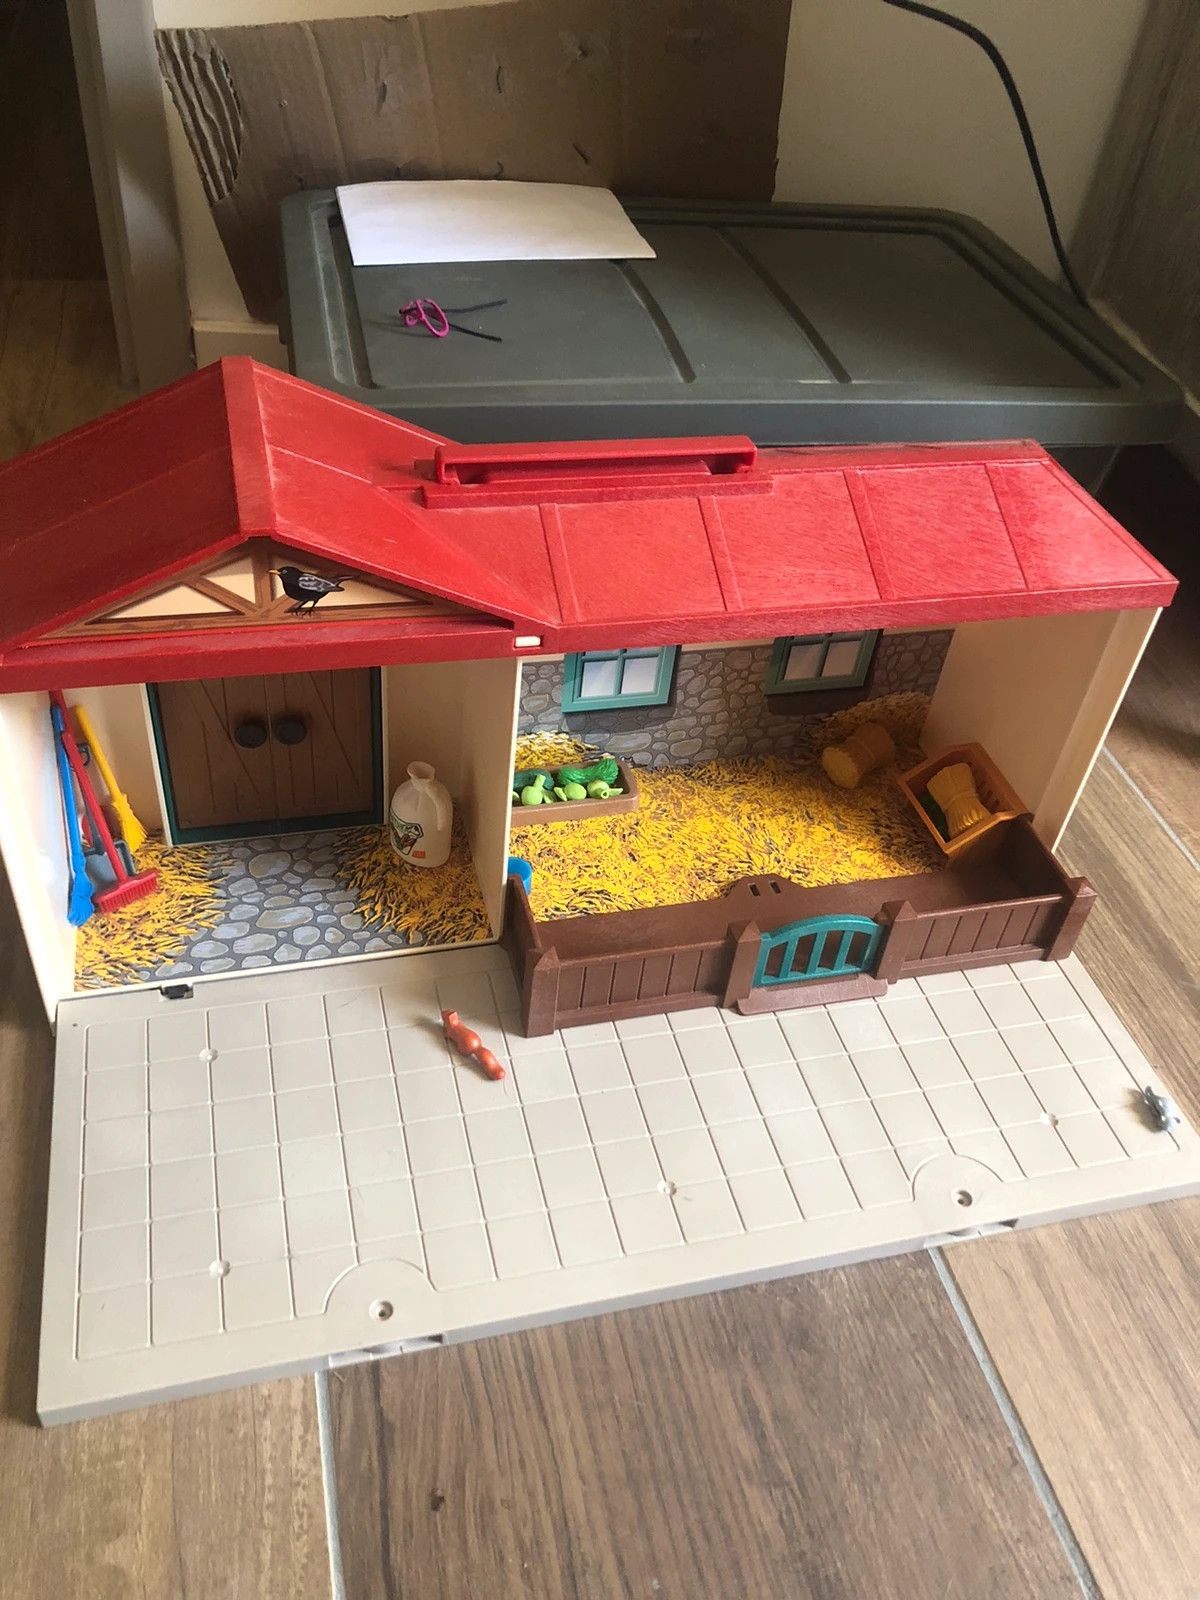 Construction écurie Playmobil français – Ecurie, enclos et portes